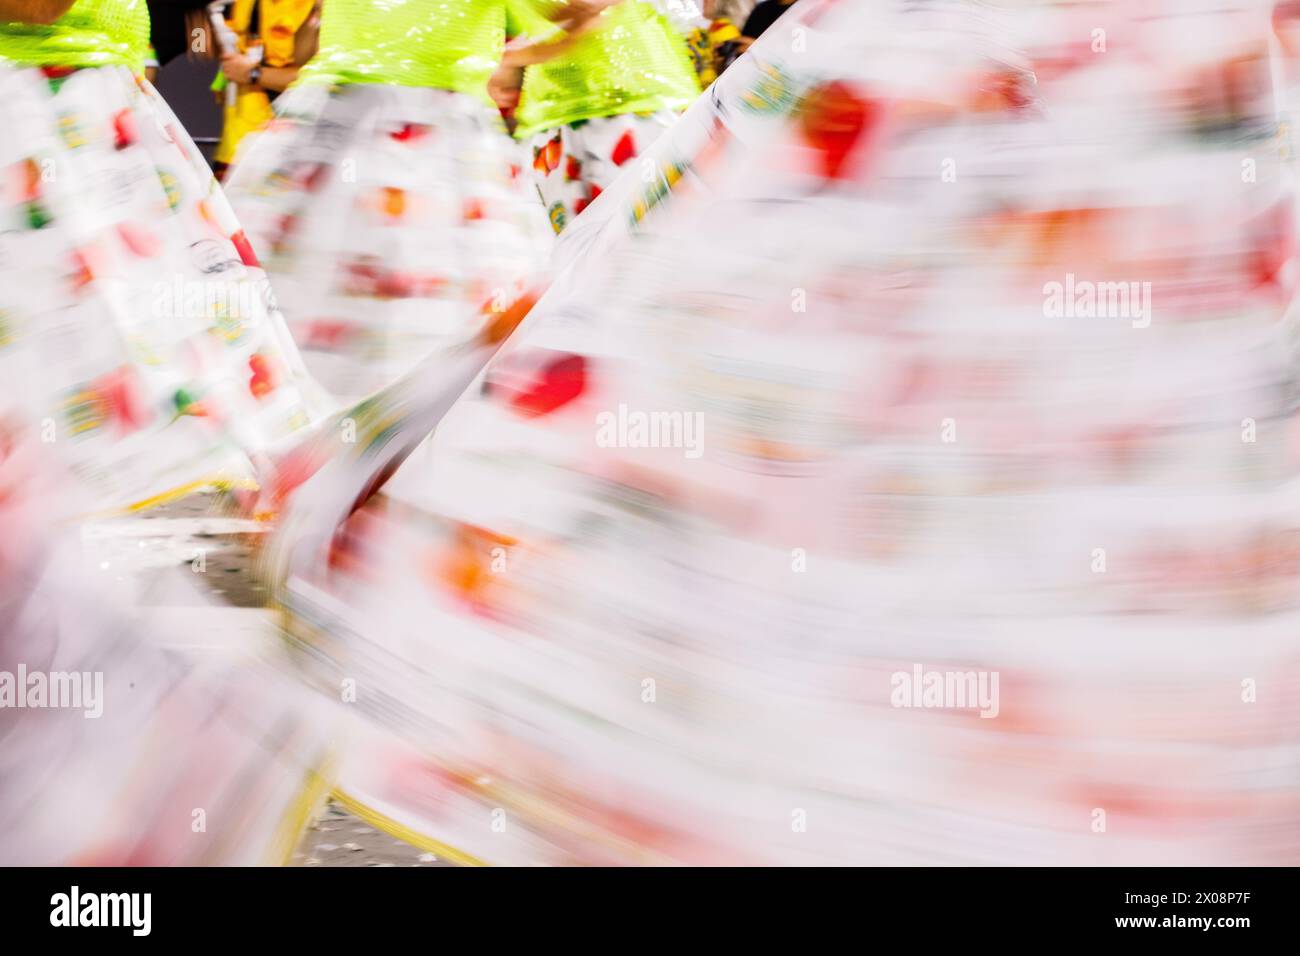 Danse d'une femme bahianaise à basse vitesse pendant le carnaval à Rio de Janeiro, Brésil. Banque D'Images